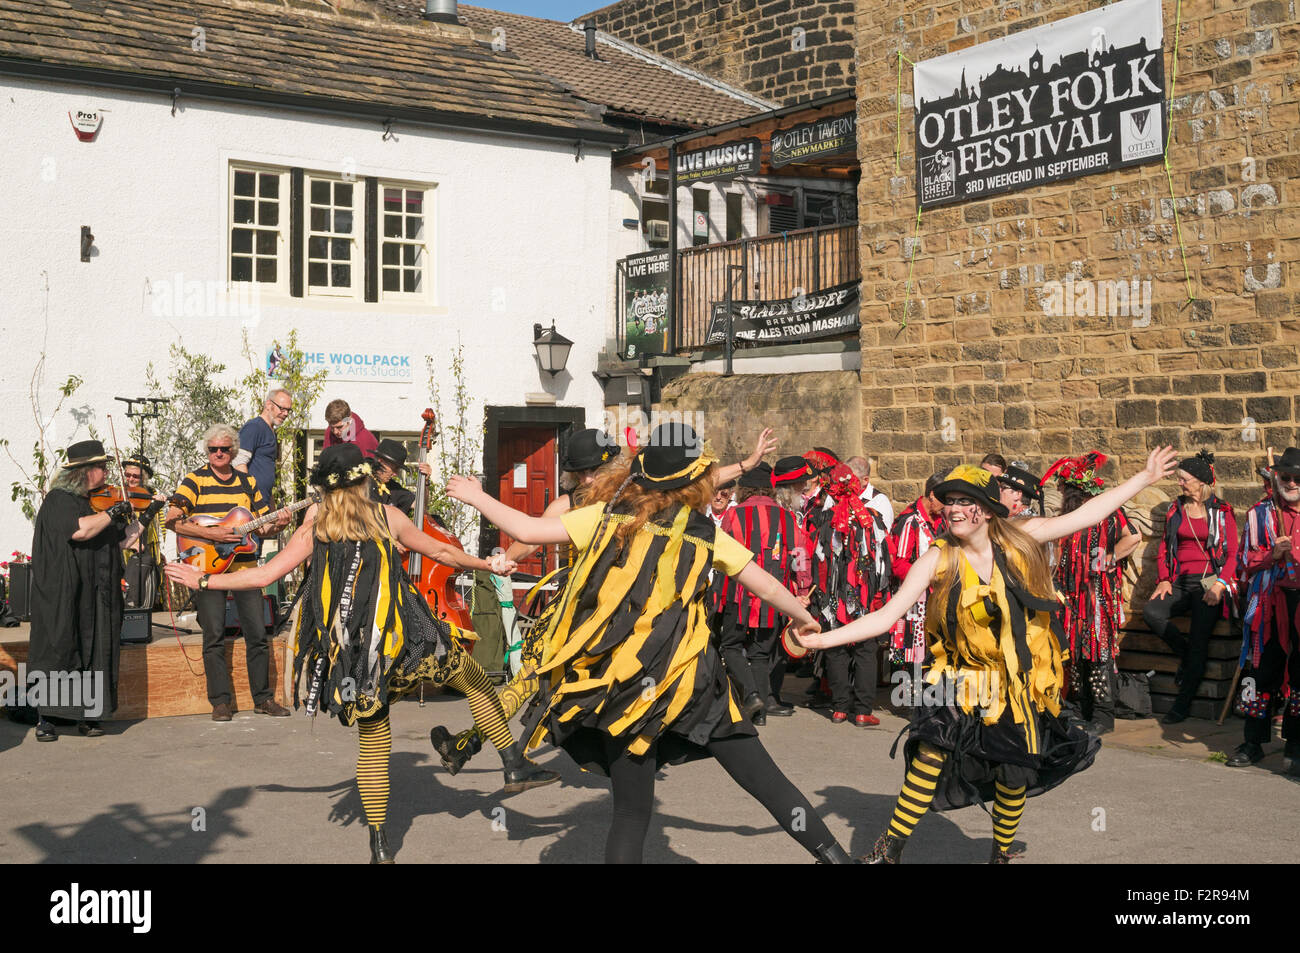 Groupe de danse Compagnie Flash effectuer à Otley Folk Festival 2015, West Yorkshire, England, UK Banque D'Images